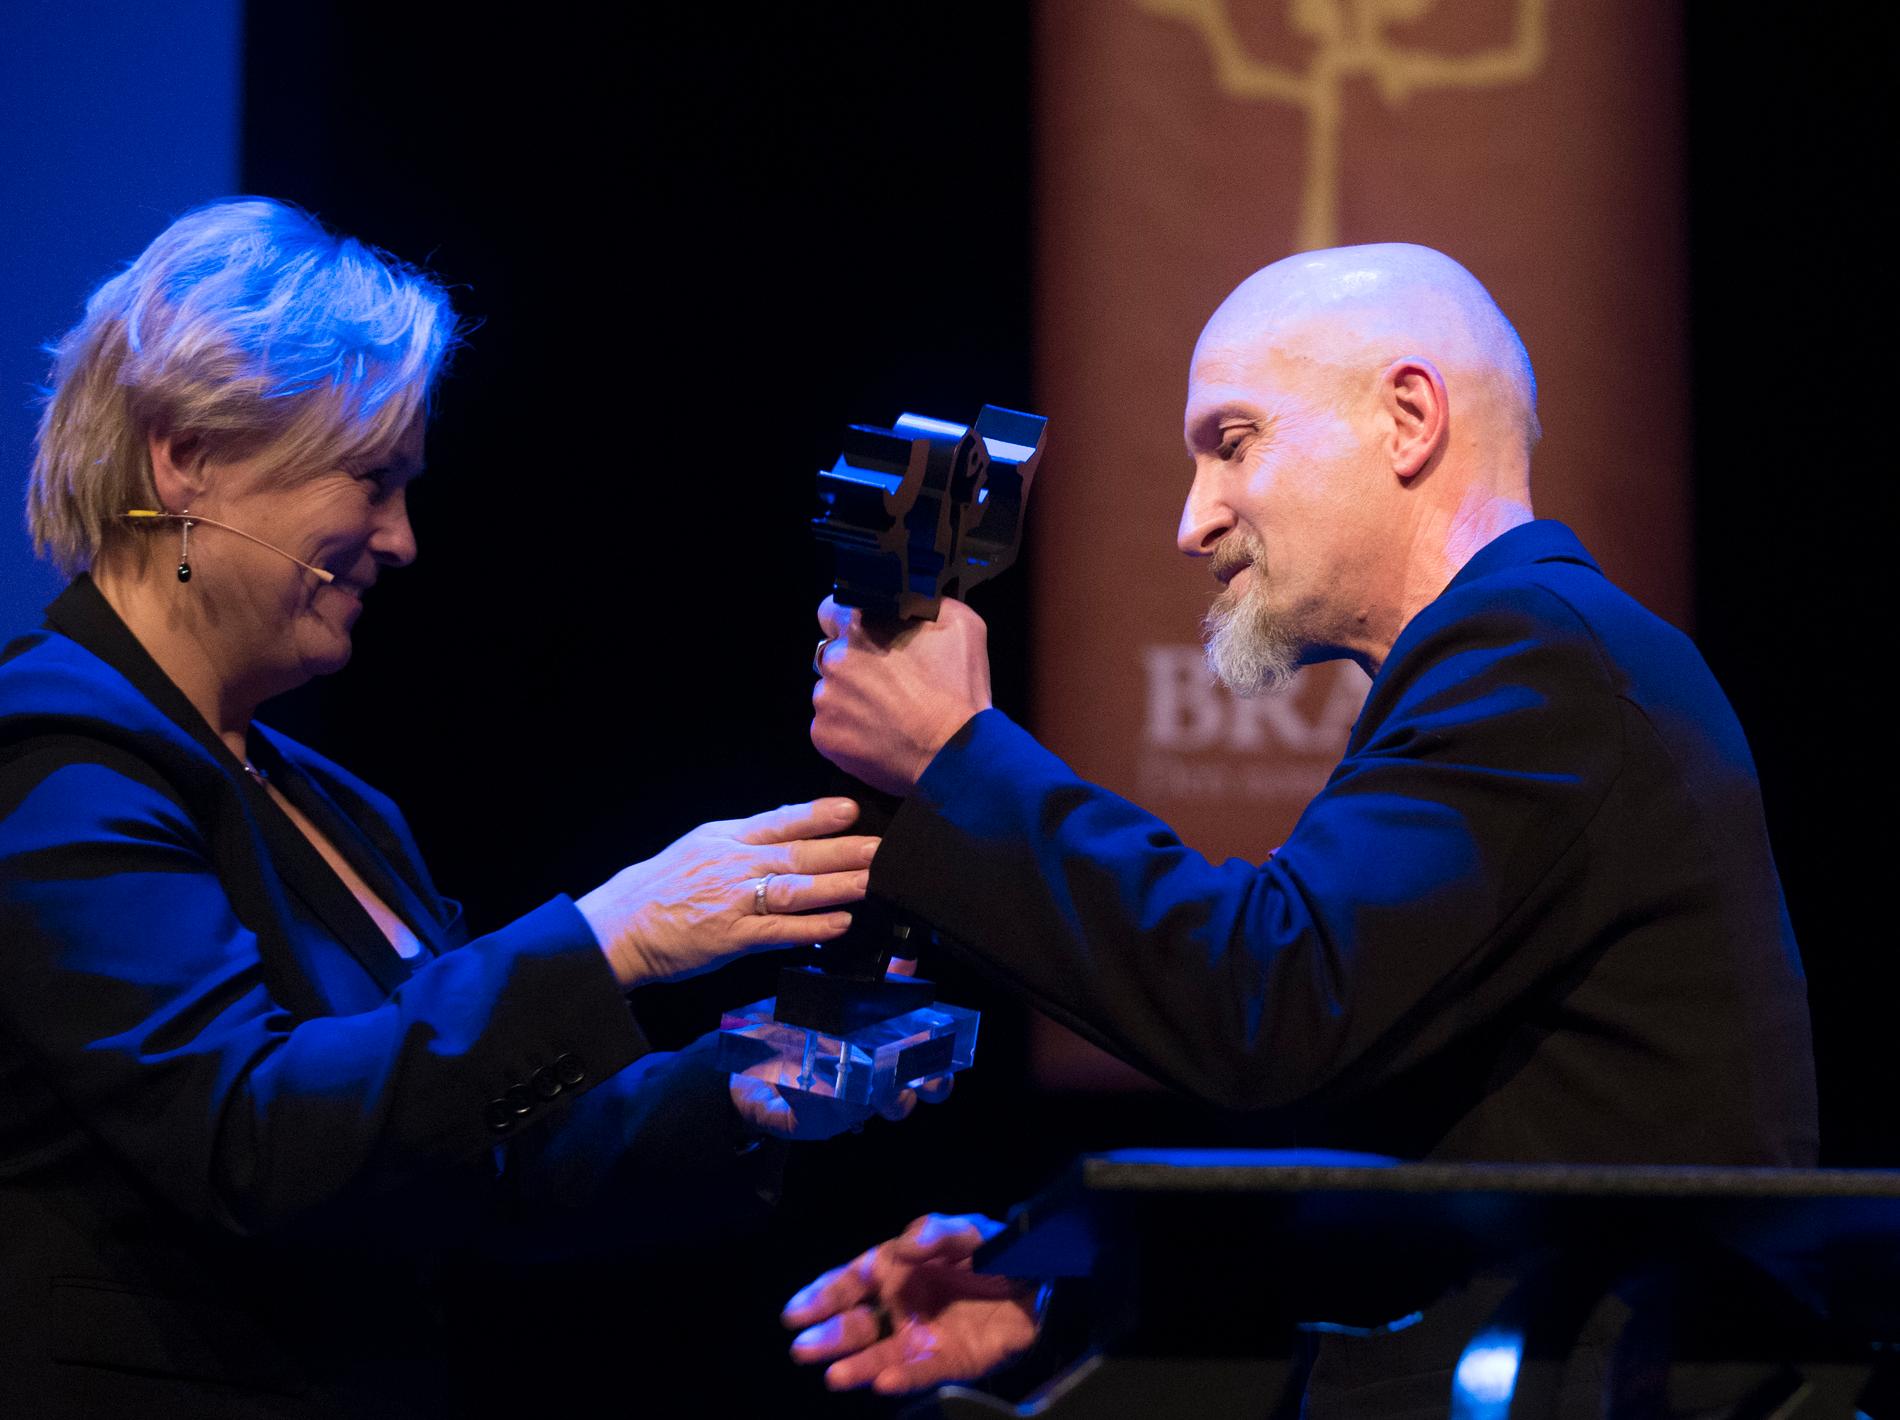 Brageprisen 2015: Med boken «Magnet» vant Lars Saabye Christensen skjønnlitteraturprisen. Kulturminister Thorhild Widvey delte ut prisen.